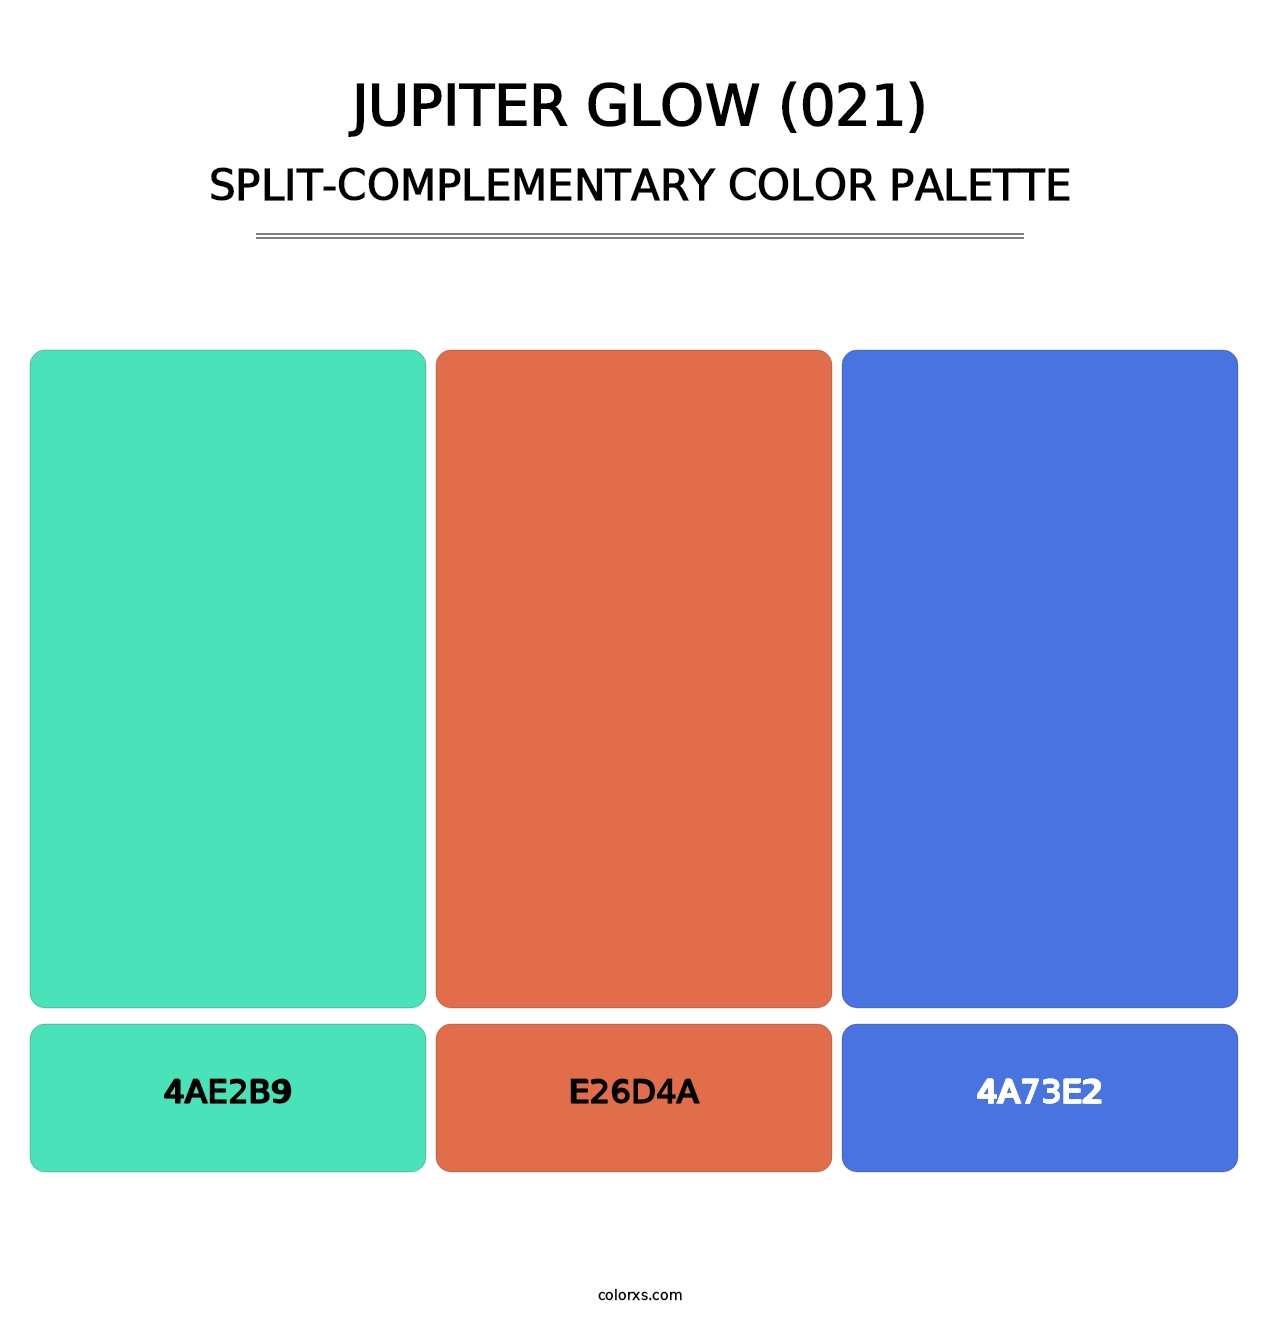 Jupiter Glow (021) - Split-Complementary Color Palette